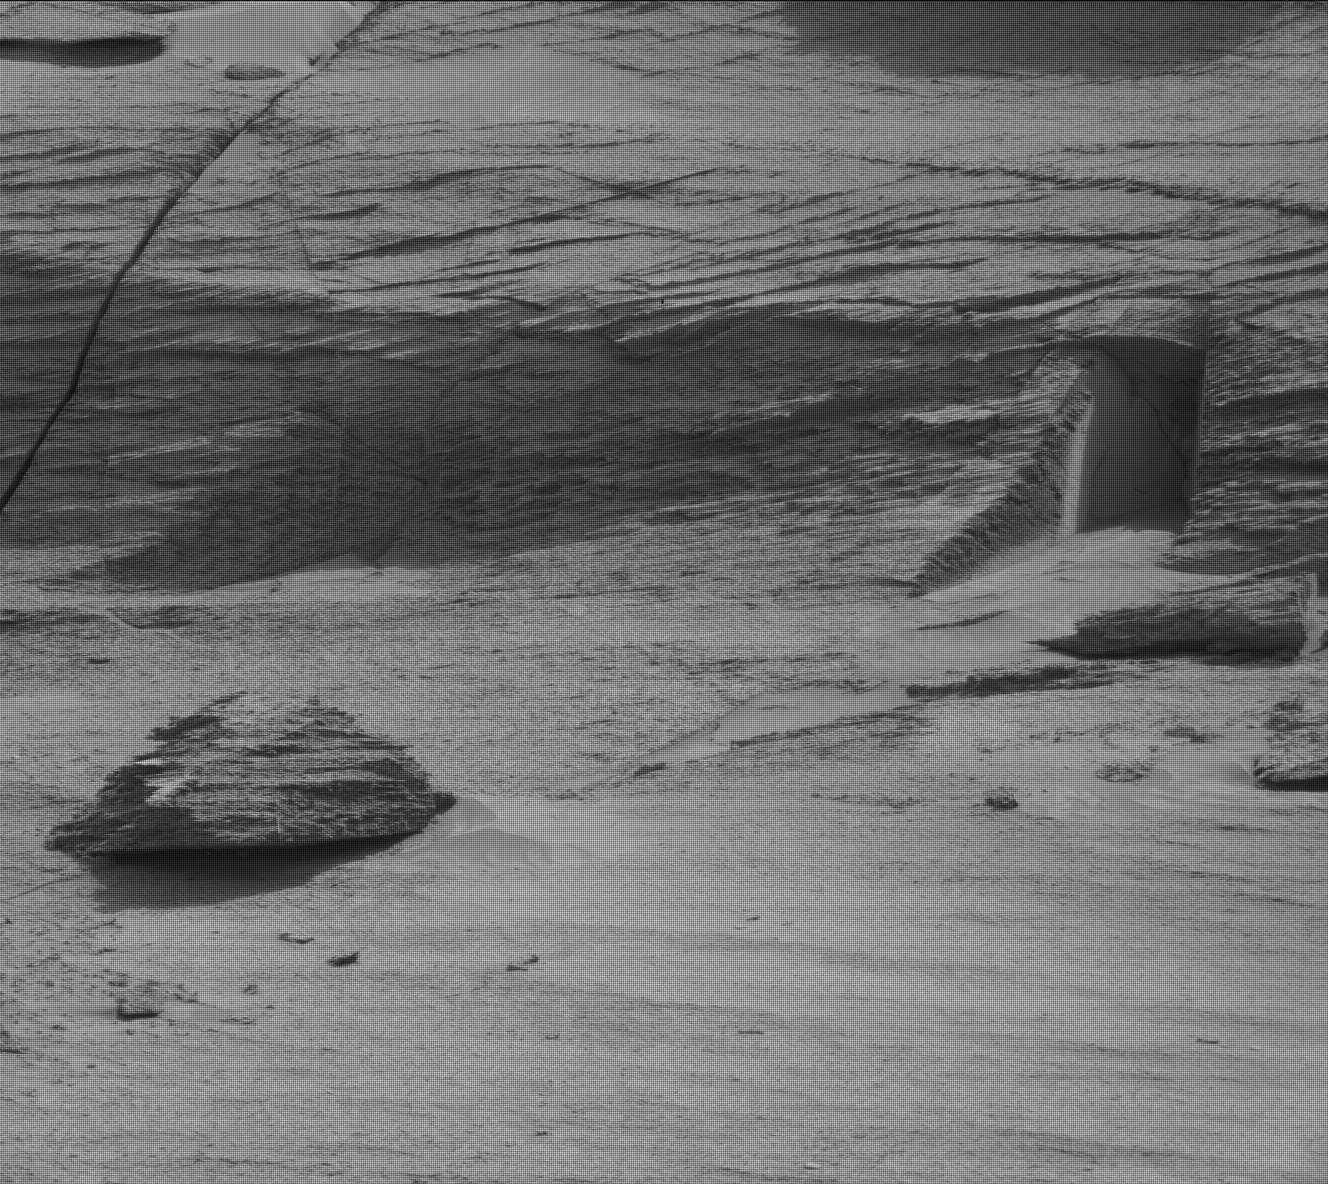 Los fanáticos de ET han notado lo que parece un pasaje secreto en las rocas marcianas y están seguros de que la apertura del acantilado es una señal de vida en Marte.